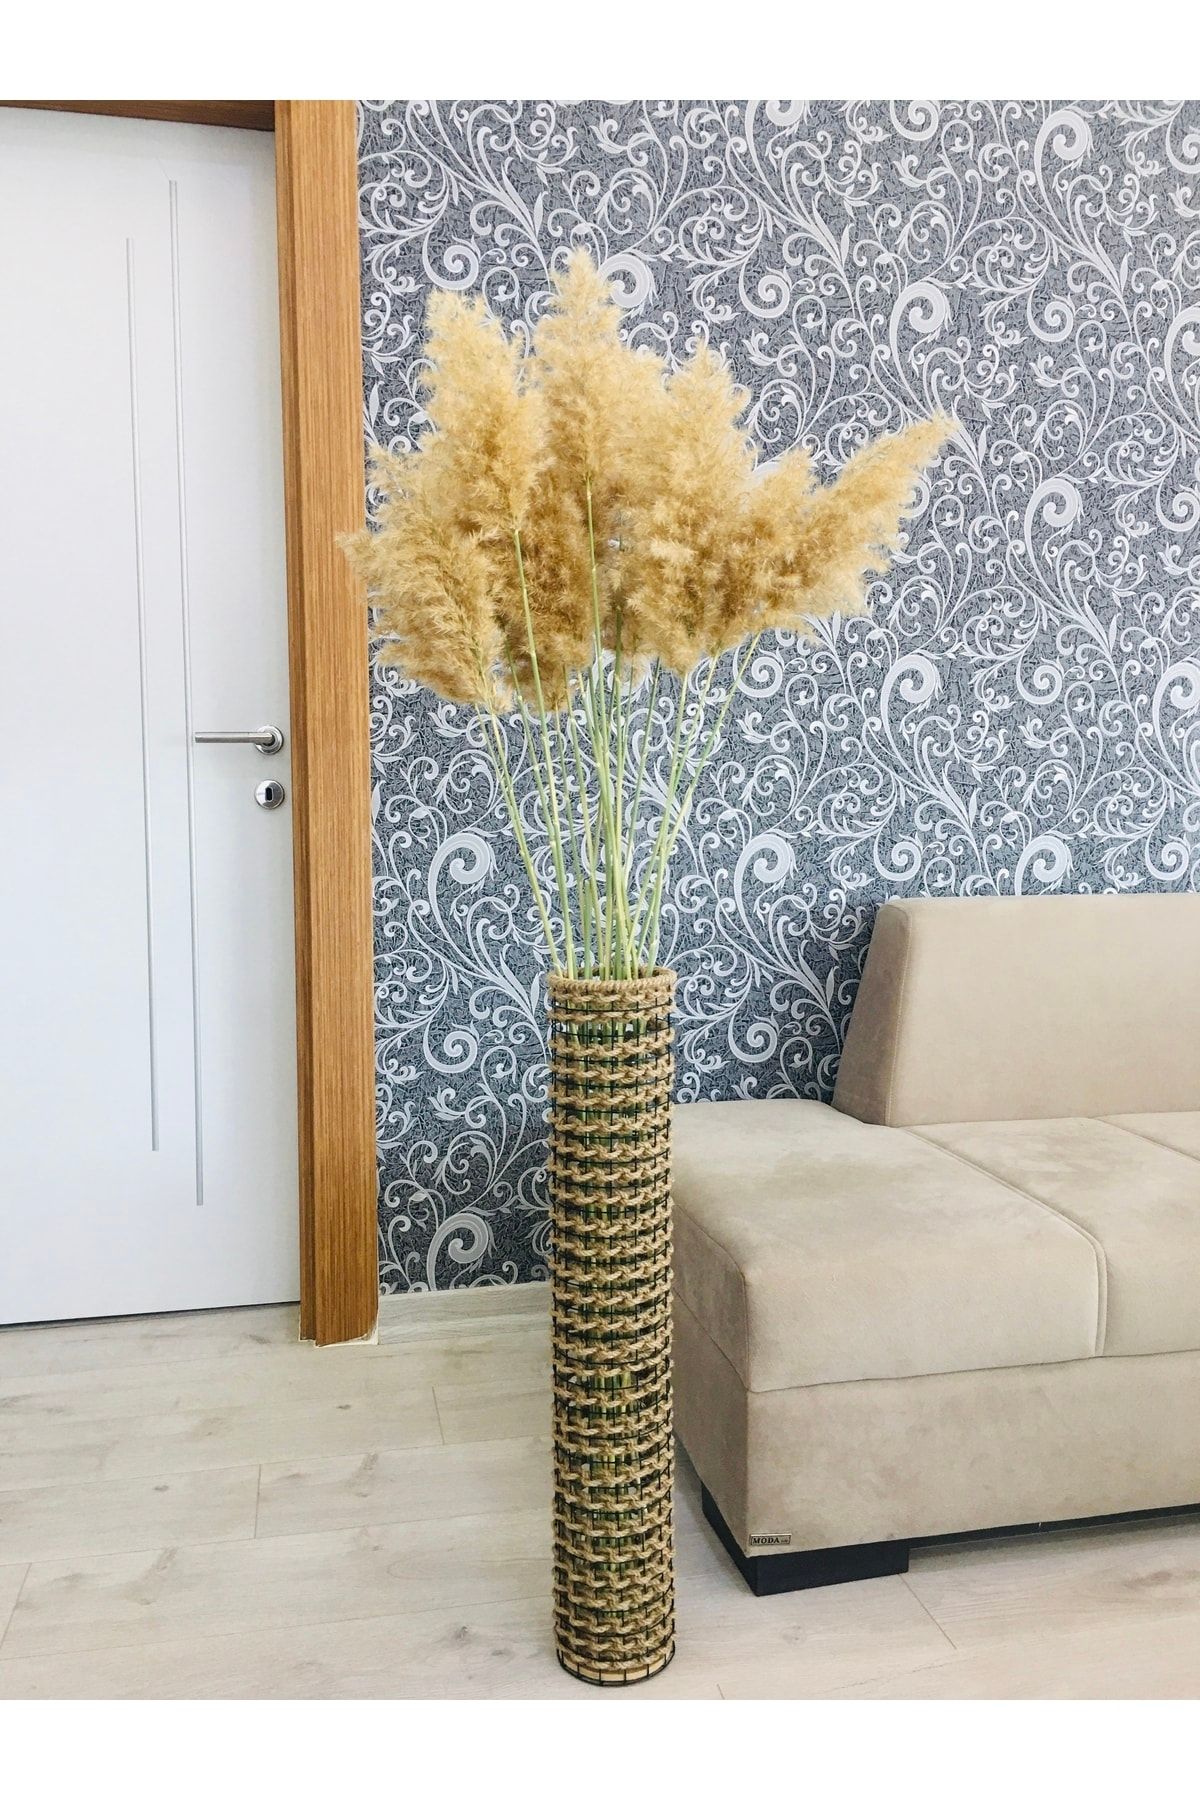 Asenya Hasır Örgü Vazo 70 Cm Ters Örgülü Tasarım Vazo Çiçeklik Yapay Çiçek Vazosu Dekoratif Saksı